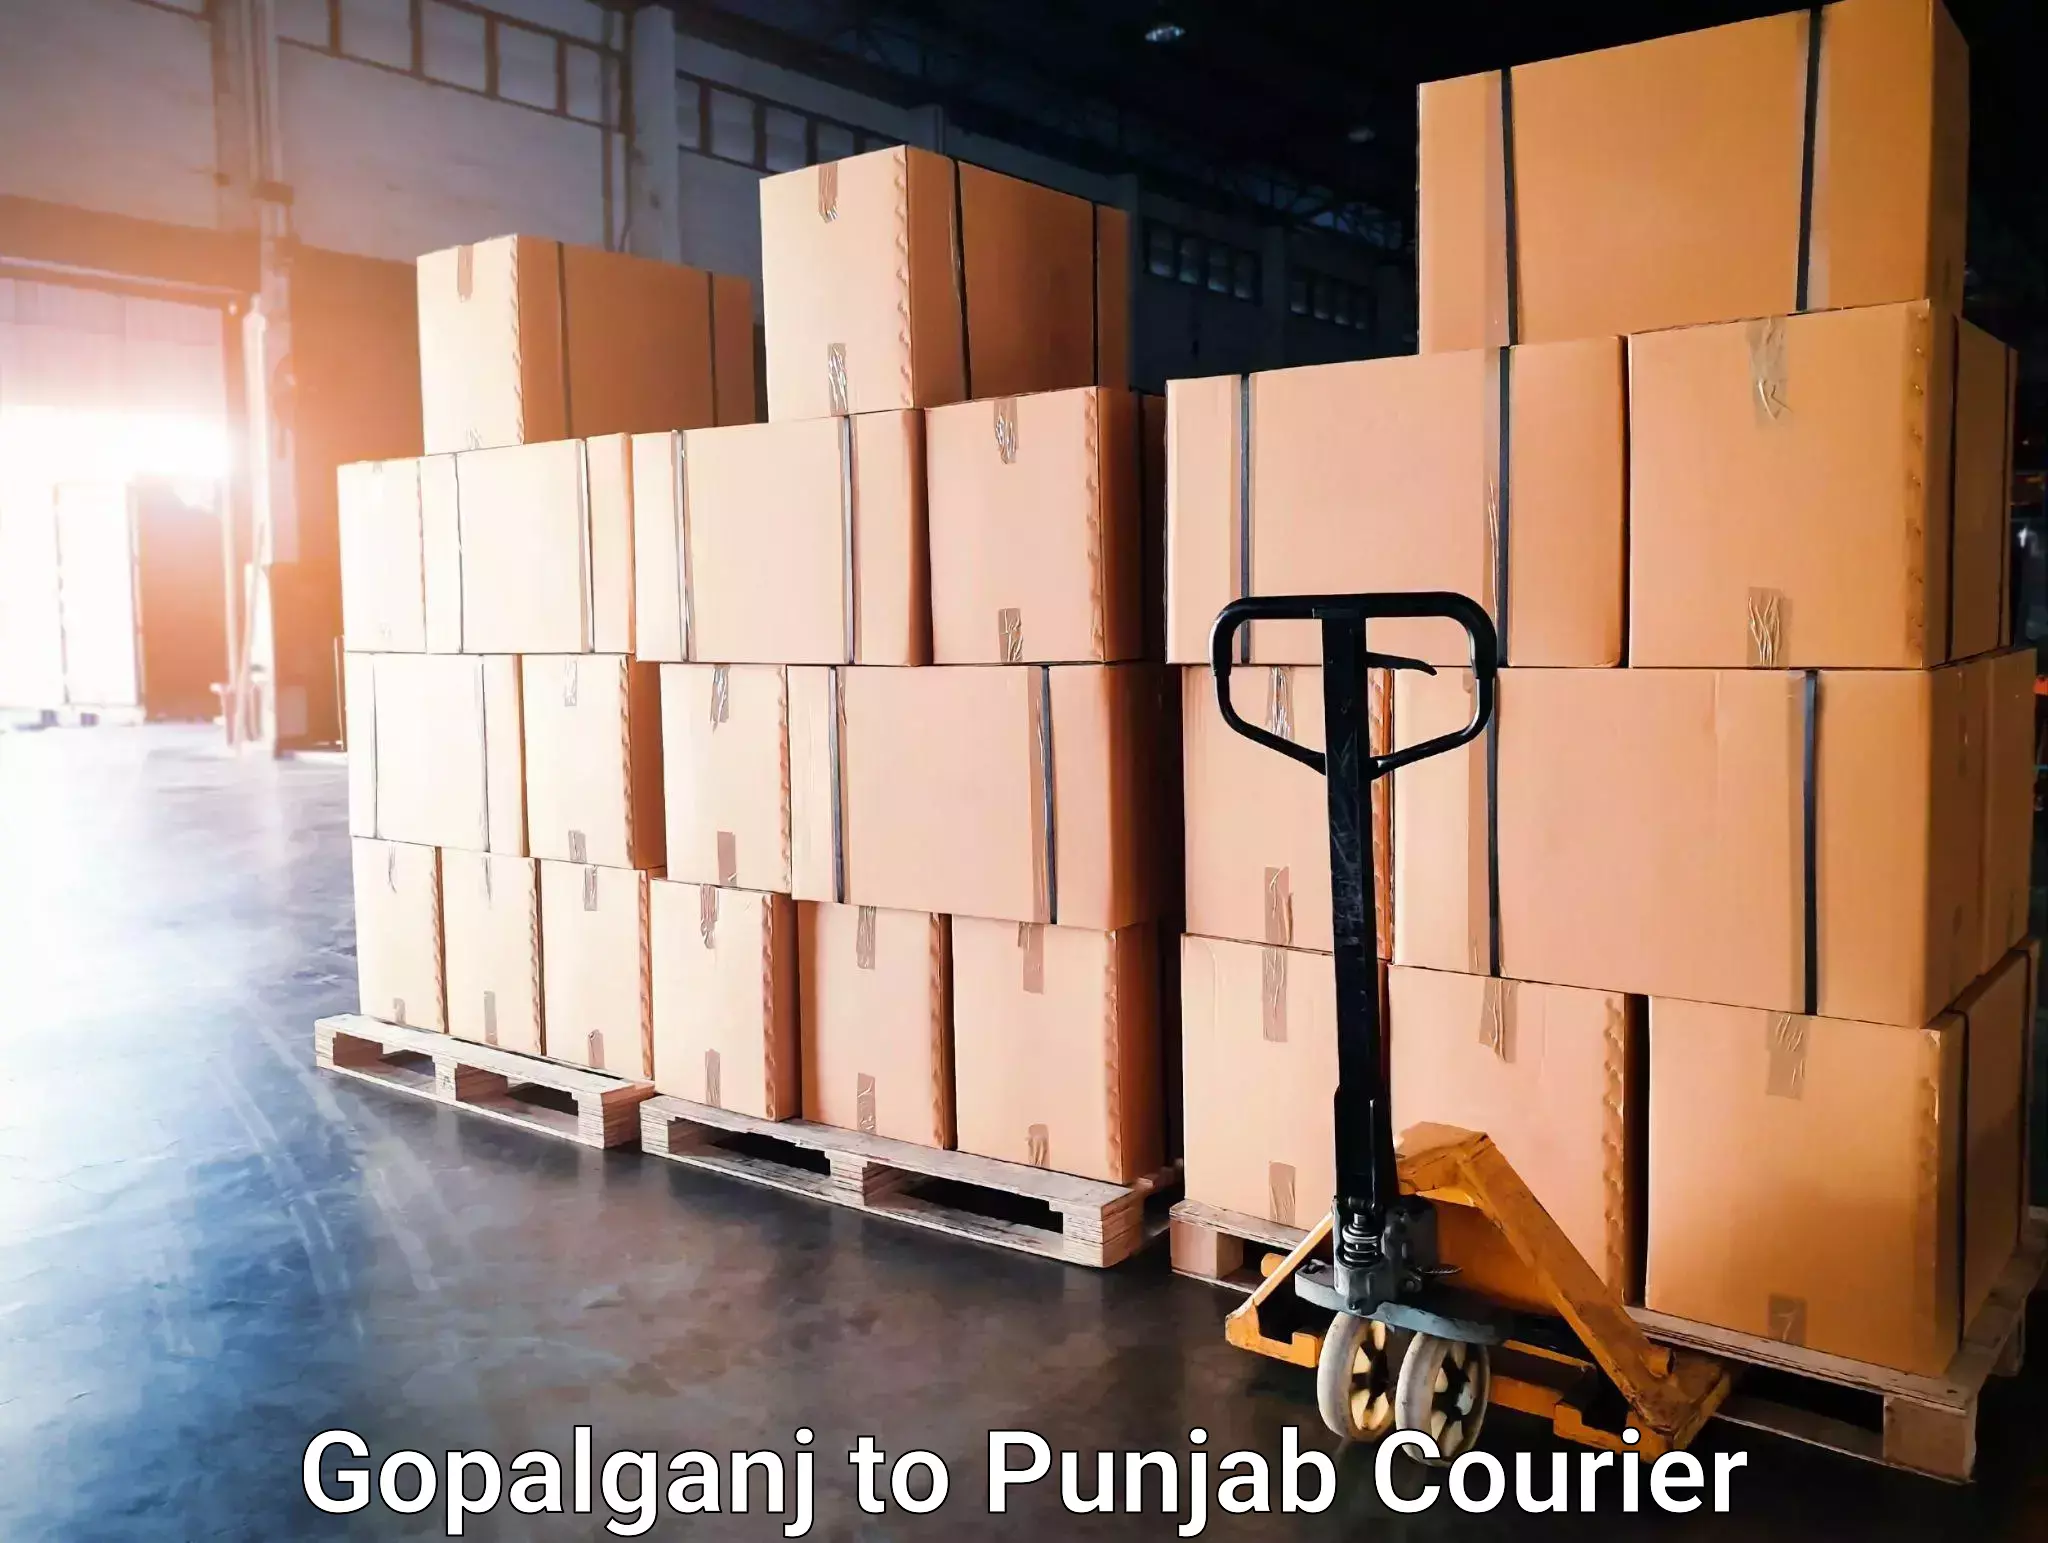 Furniture moving experts Gopalganj to Punjab